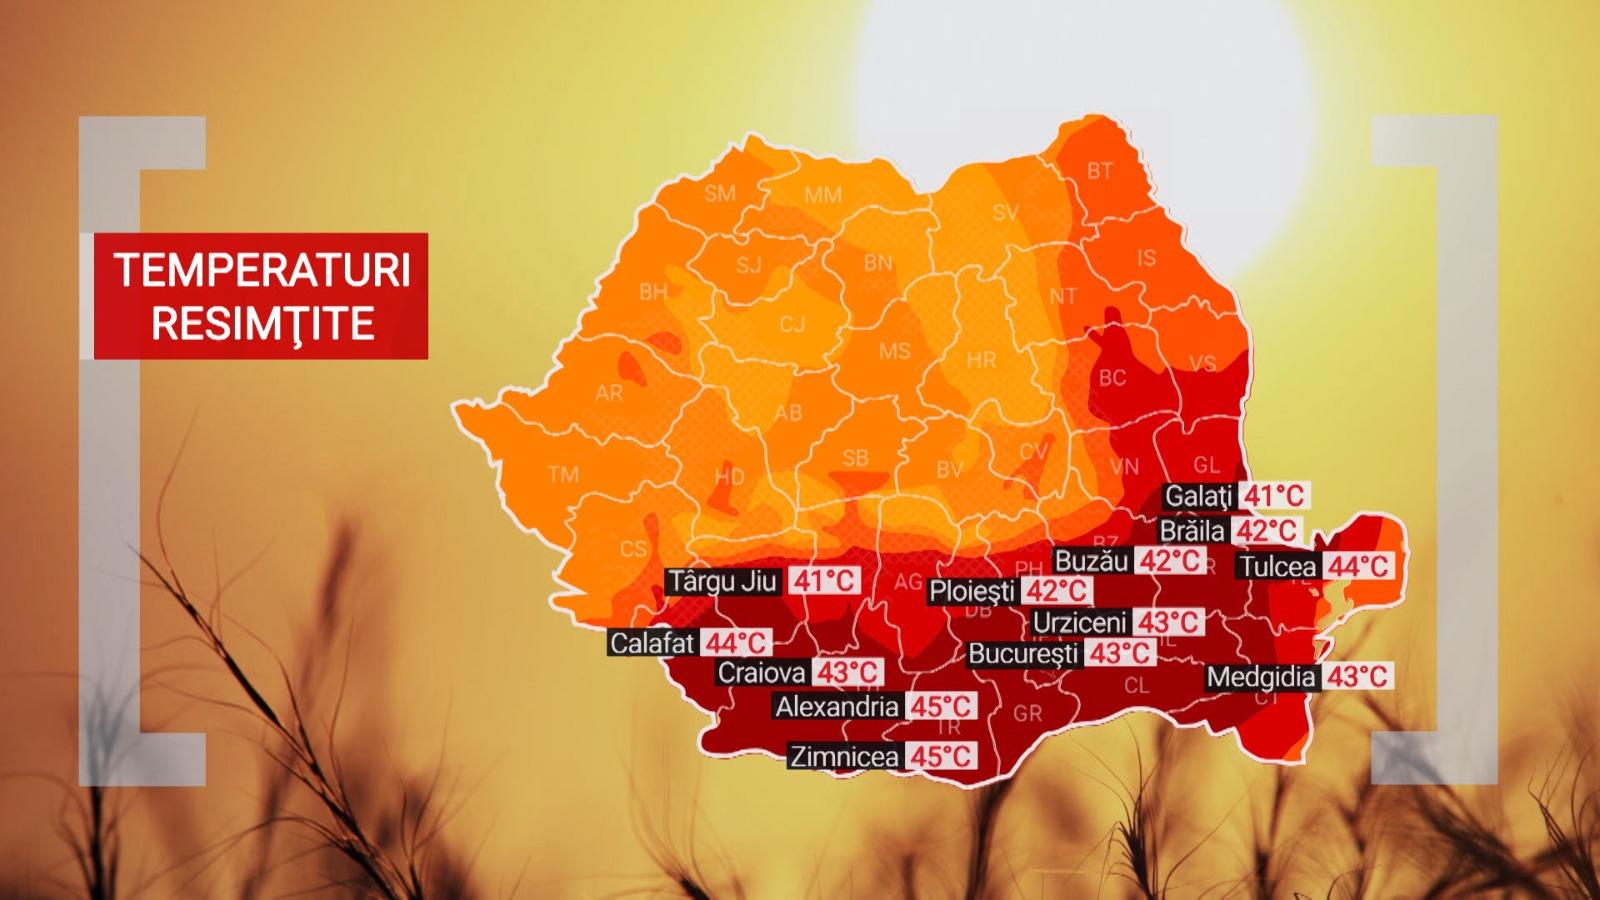 Val de căldură în România